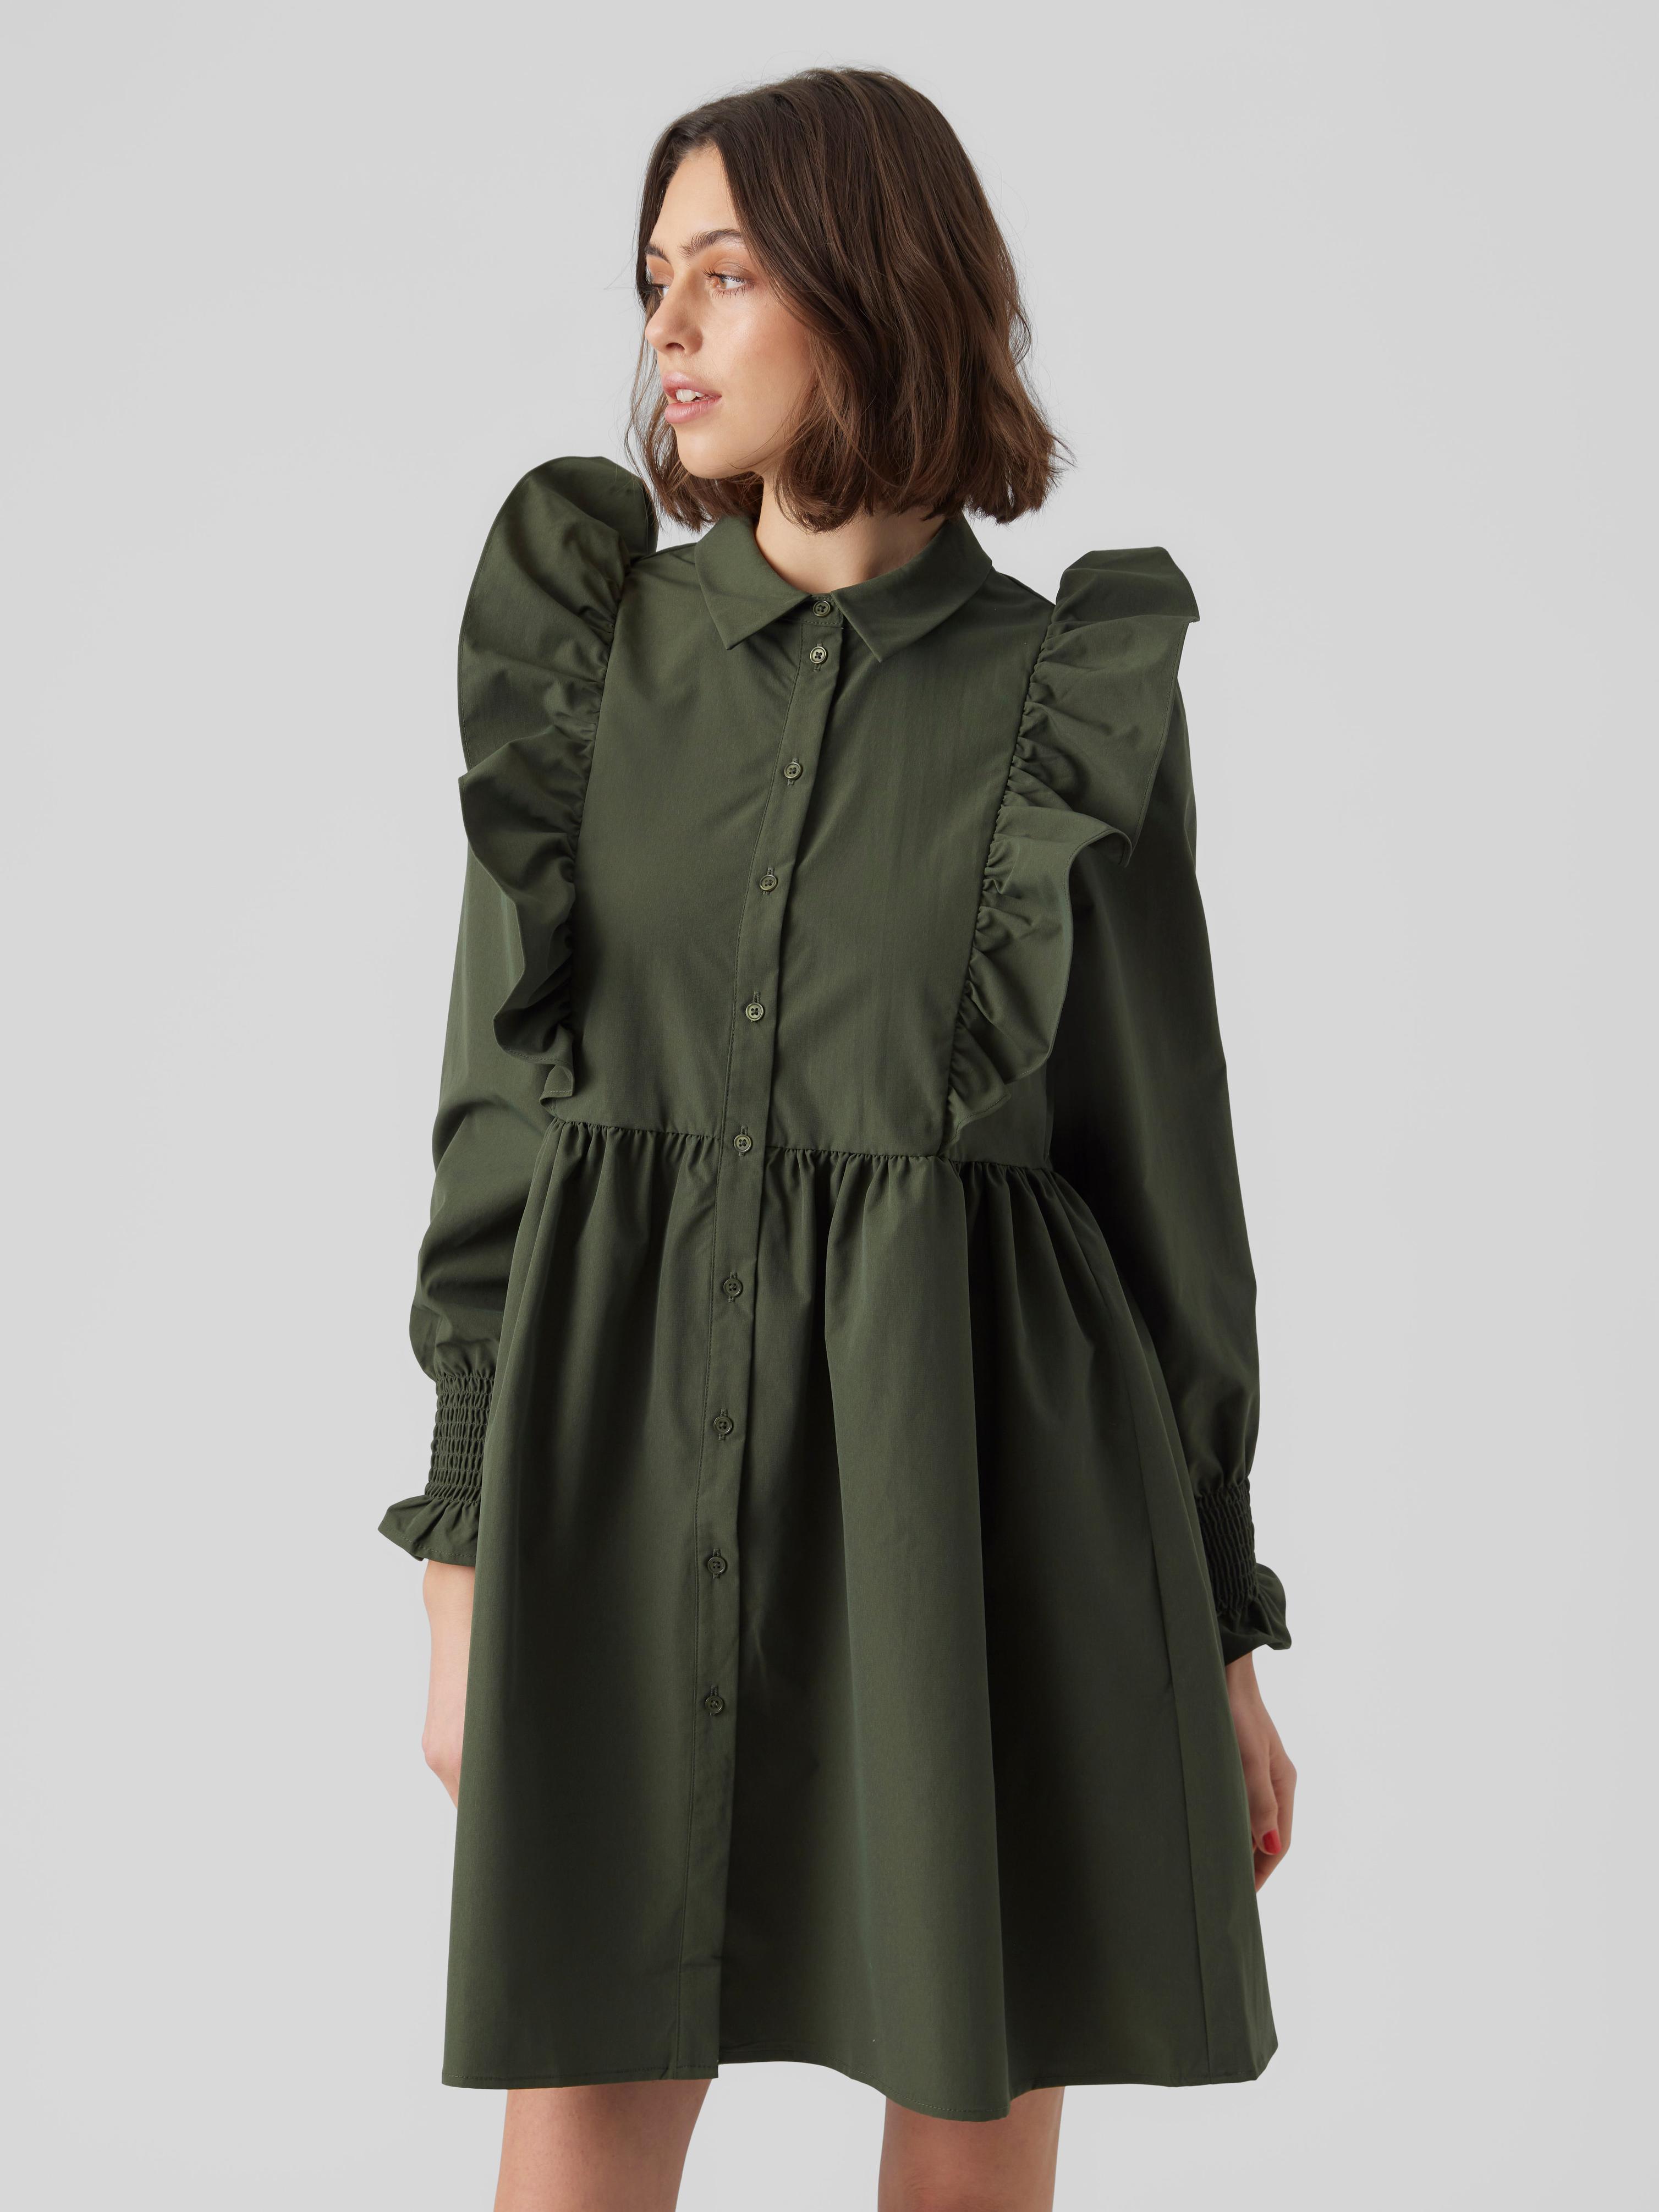 Tilbud: VMMELLA Kort kjole kr 374,96 på Vero Moda